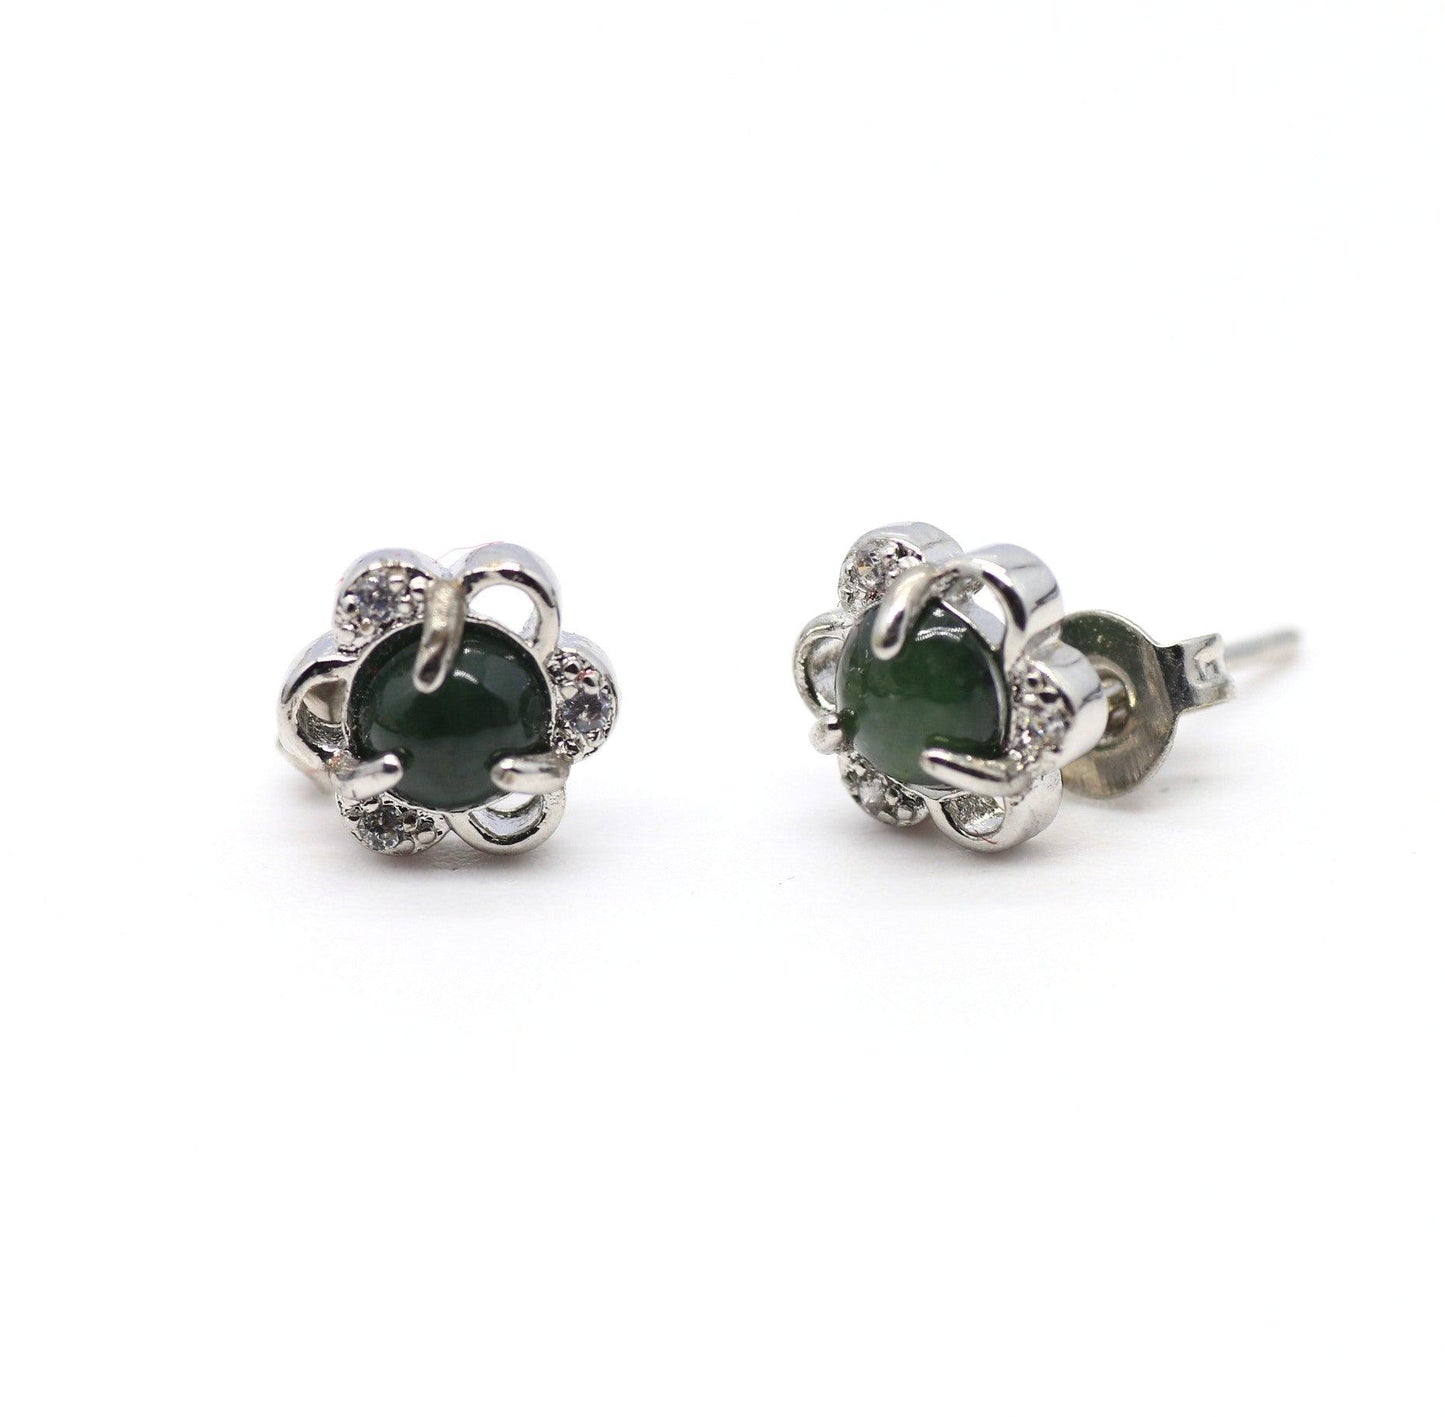 Type A Jadeite Jade Earrings s925 Silver Inlay 7N-B7YX-MF4L